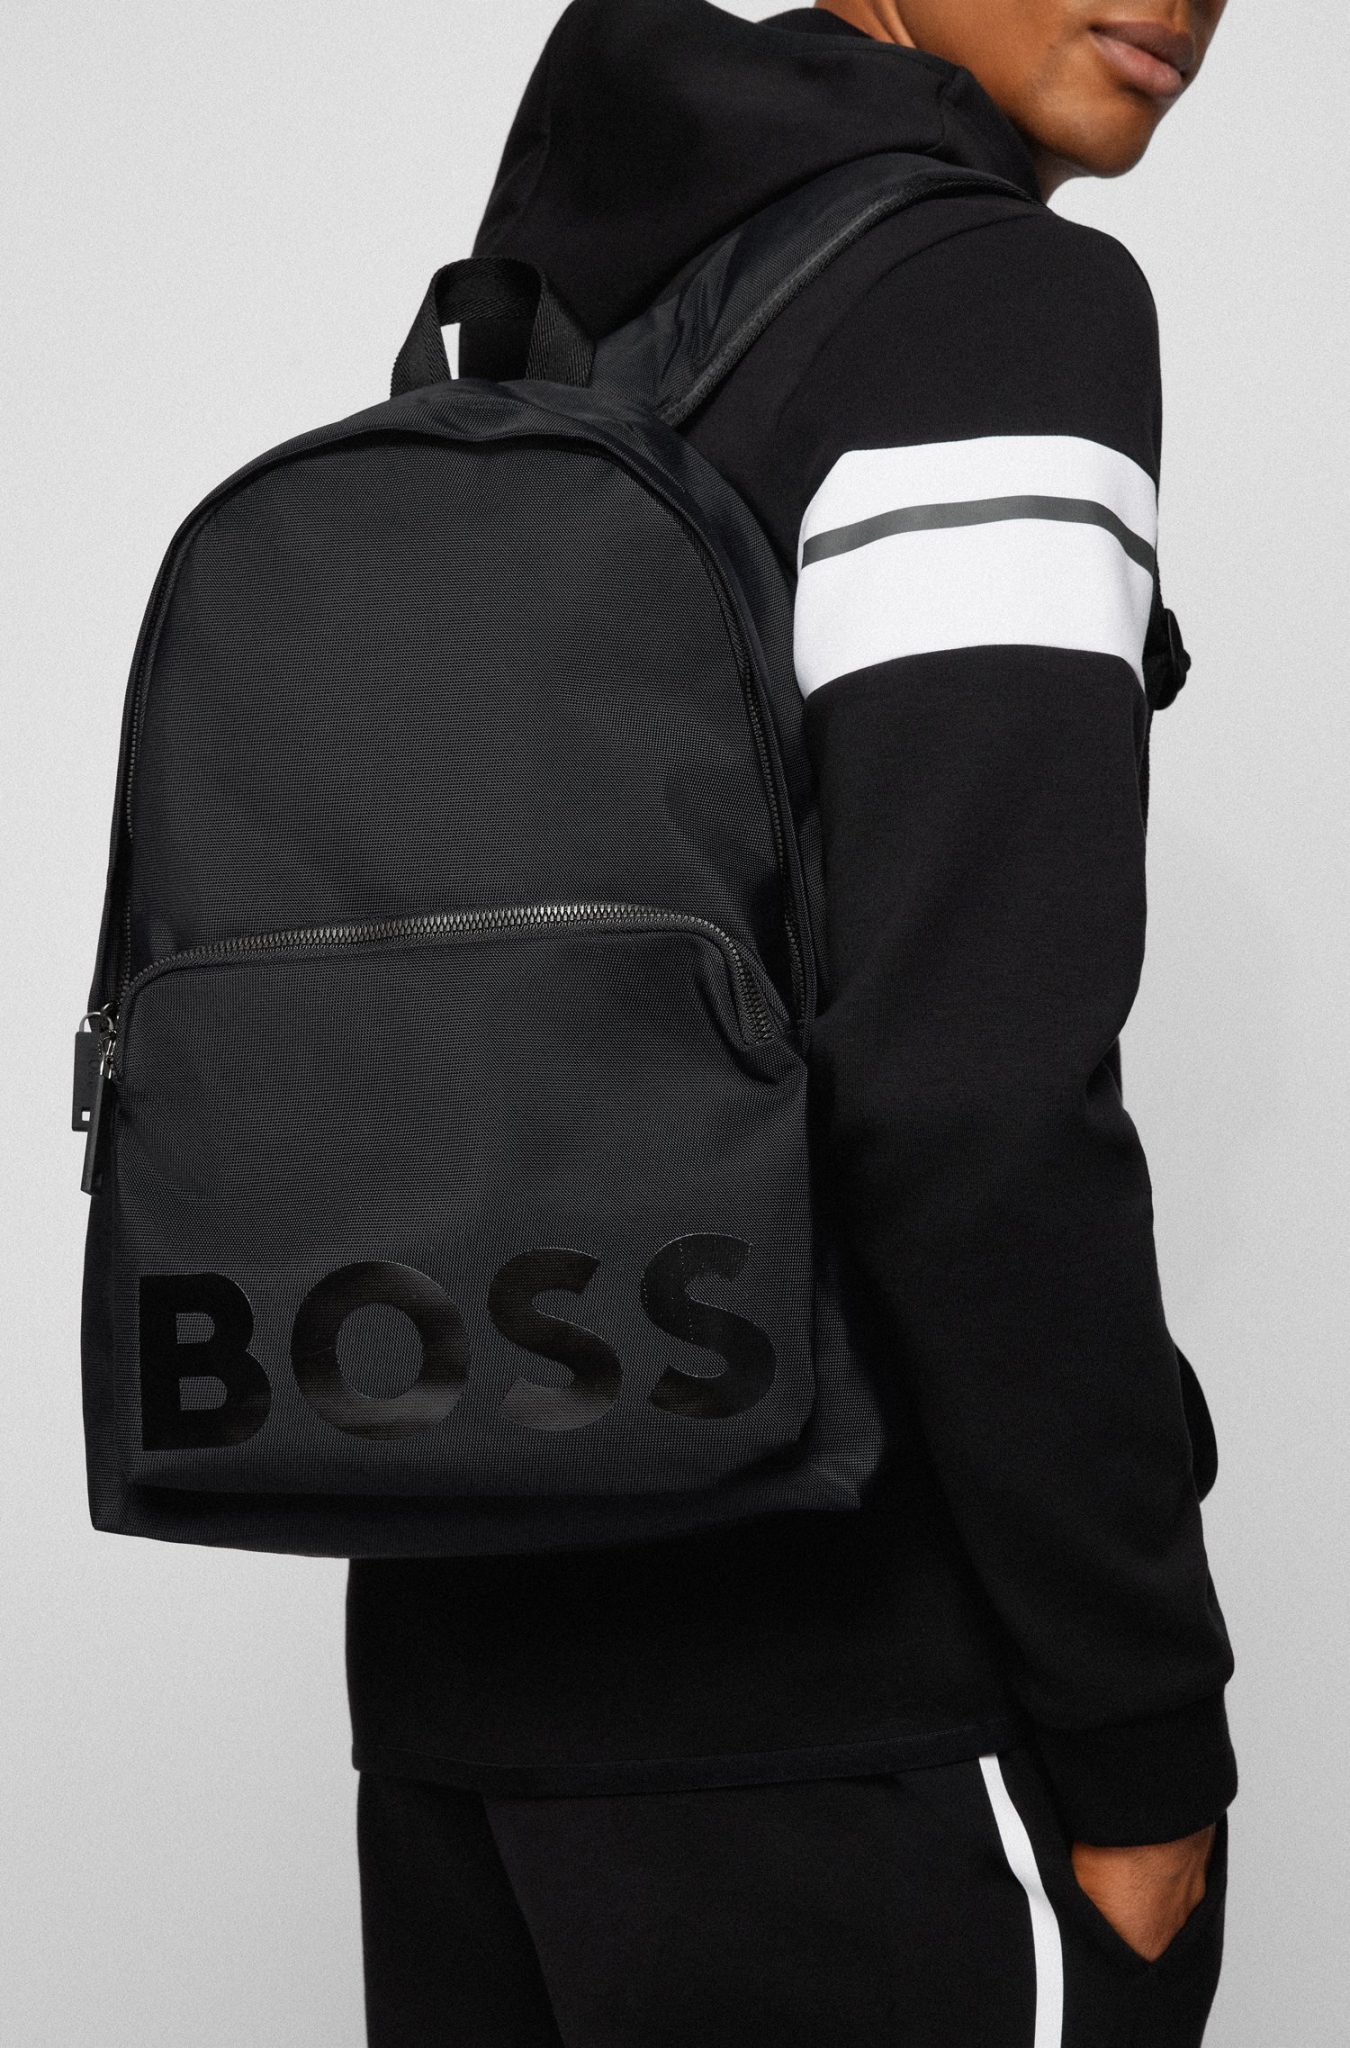 Buy Hugo Boss Catch Backpack Black - Scandinavian Fashion Store